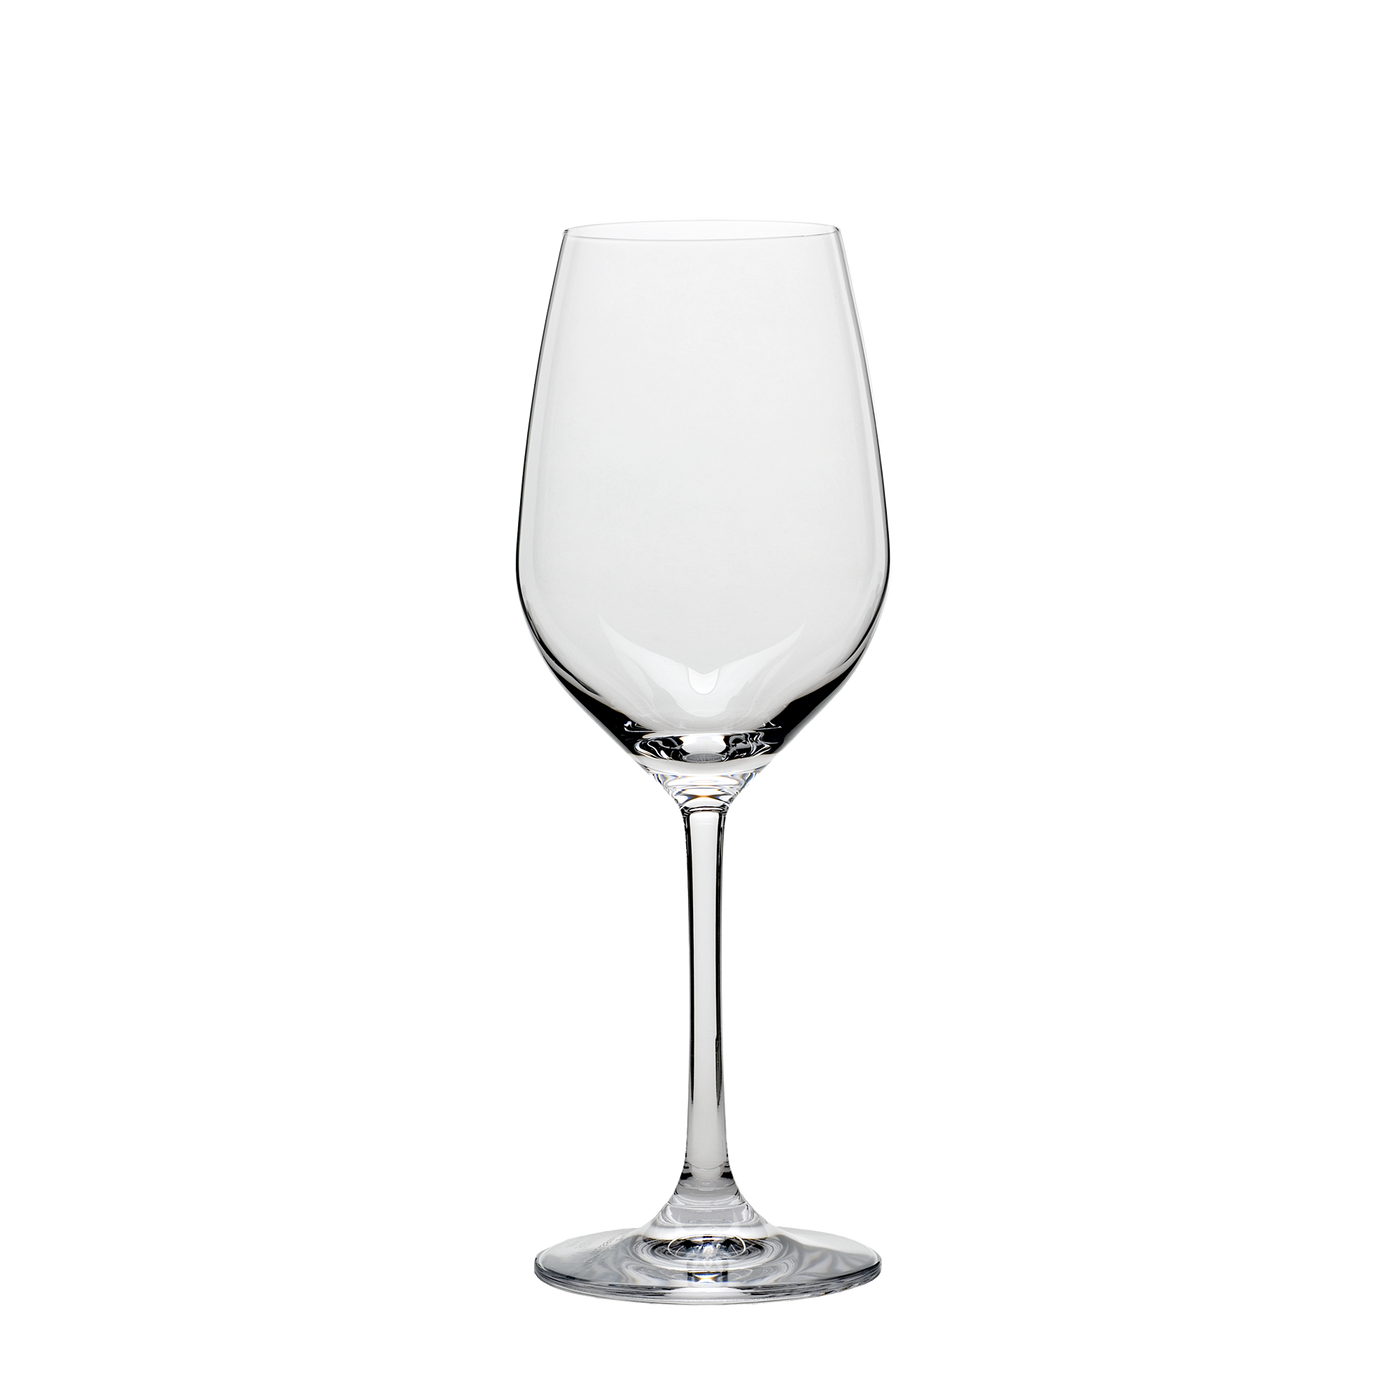 Grand Epicurean White Wine Glass 9.5 oz. - Set of 4